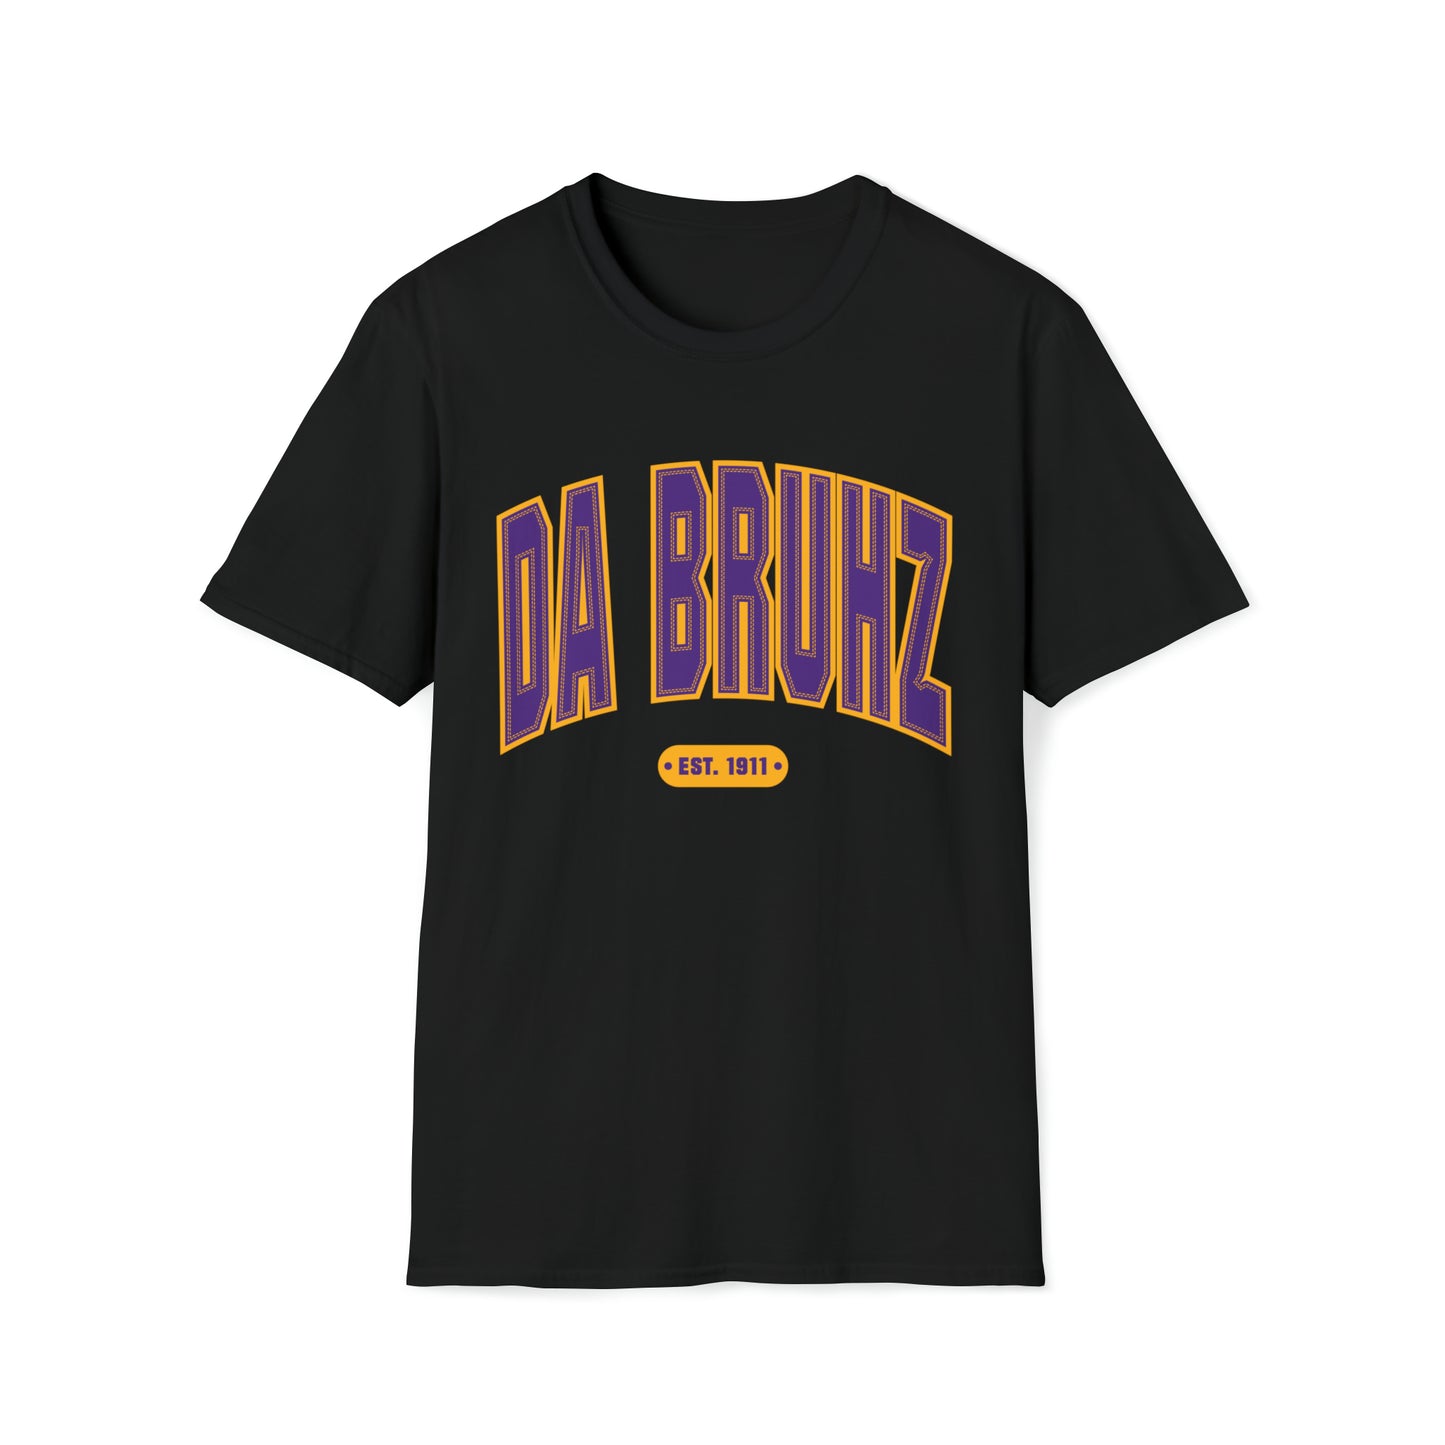 Da Bruhz Shirt Matching Air Jordan 12 Field Purple